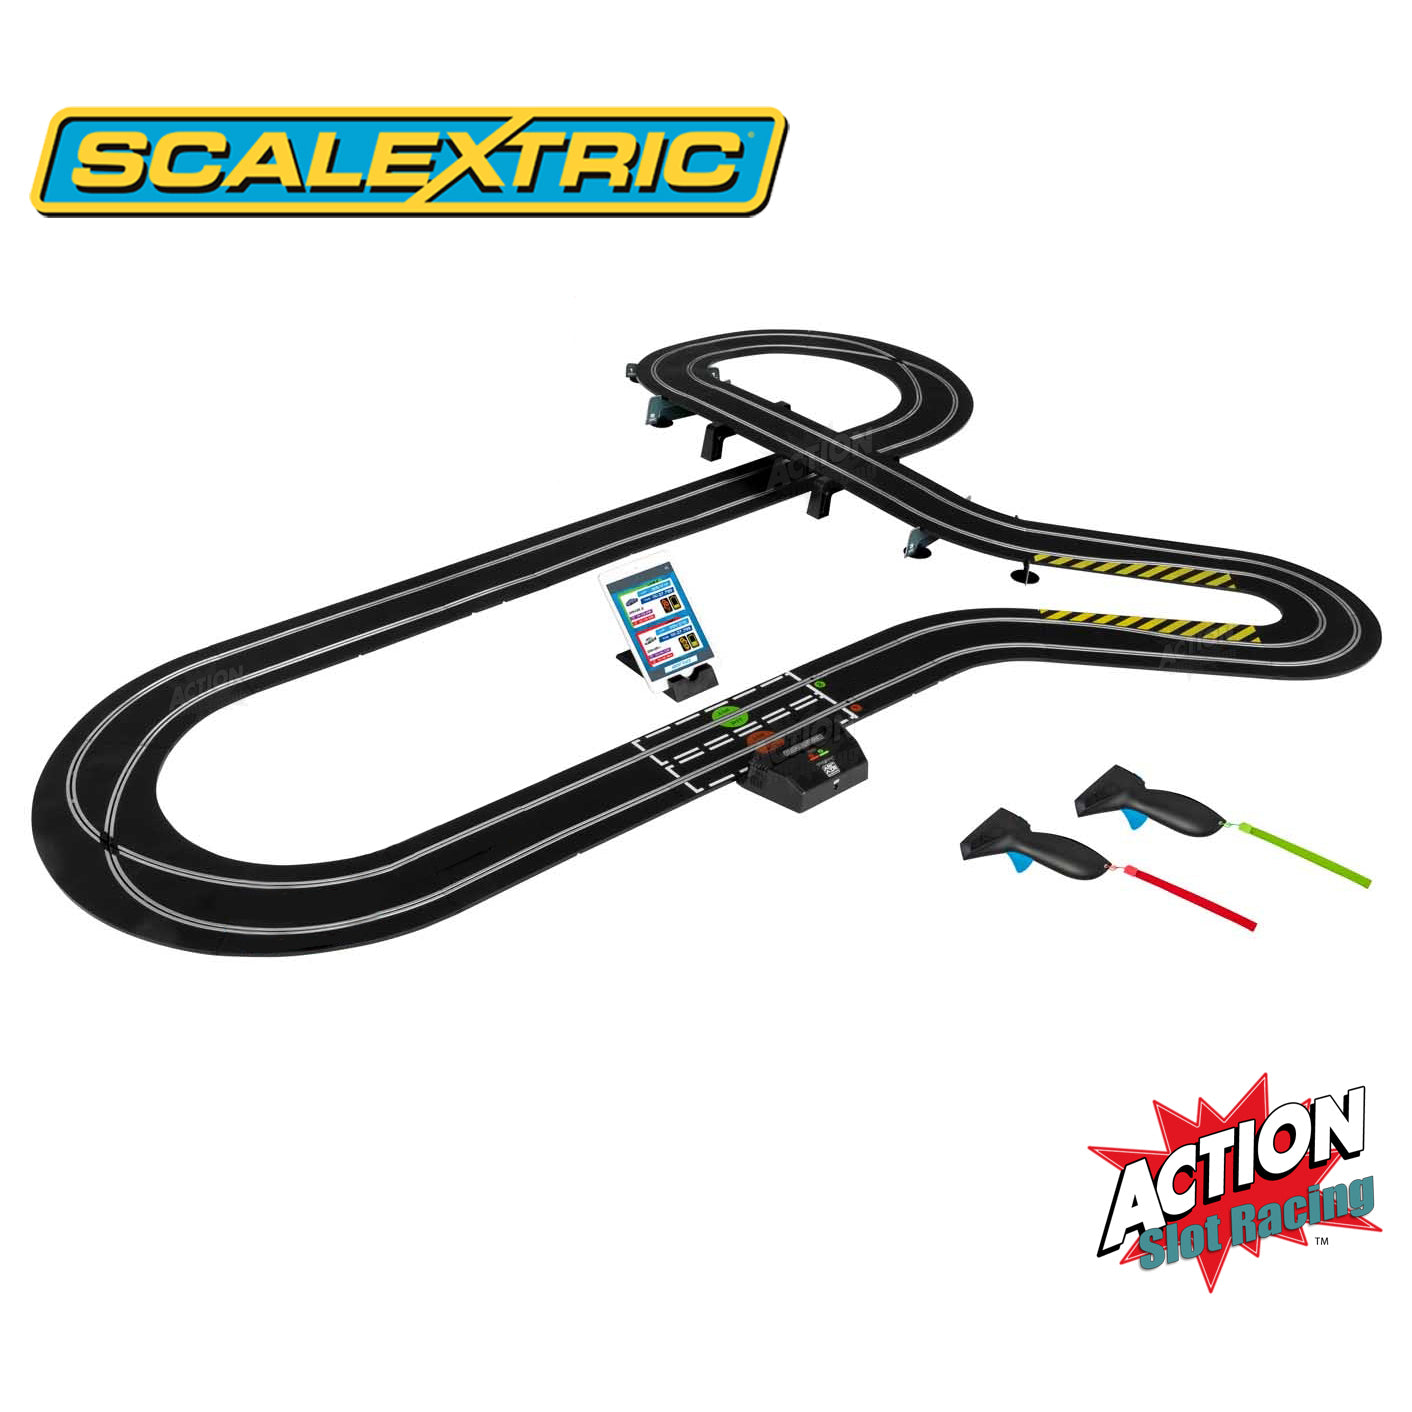 Juego de pistas Scalextric Sport 1:32 - Diseño grande con coches